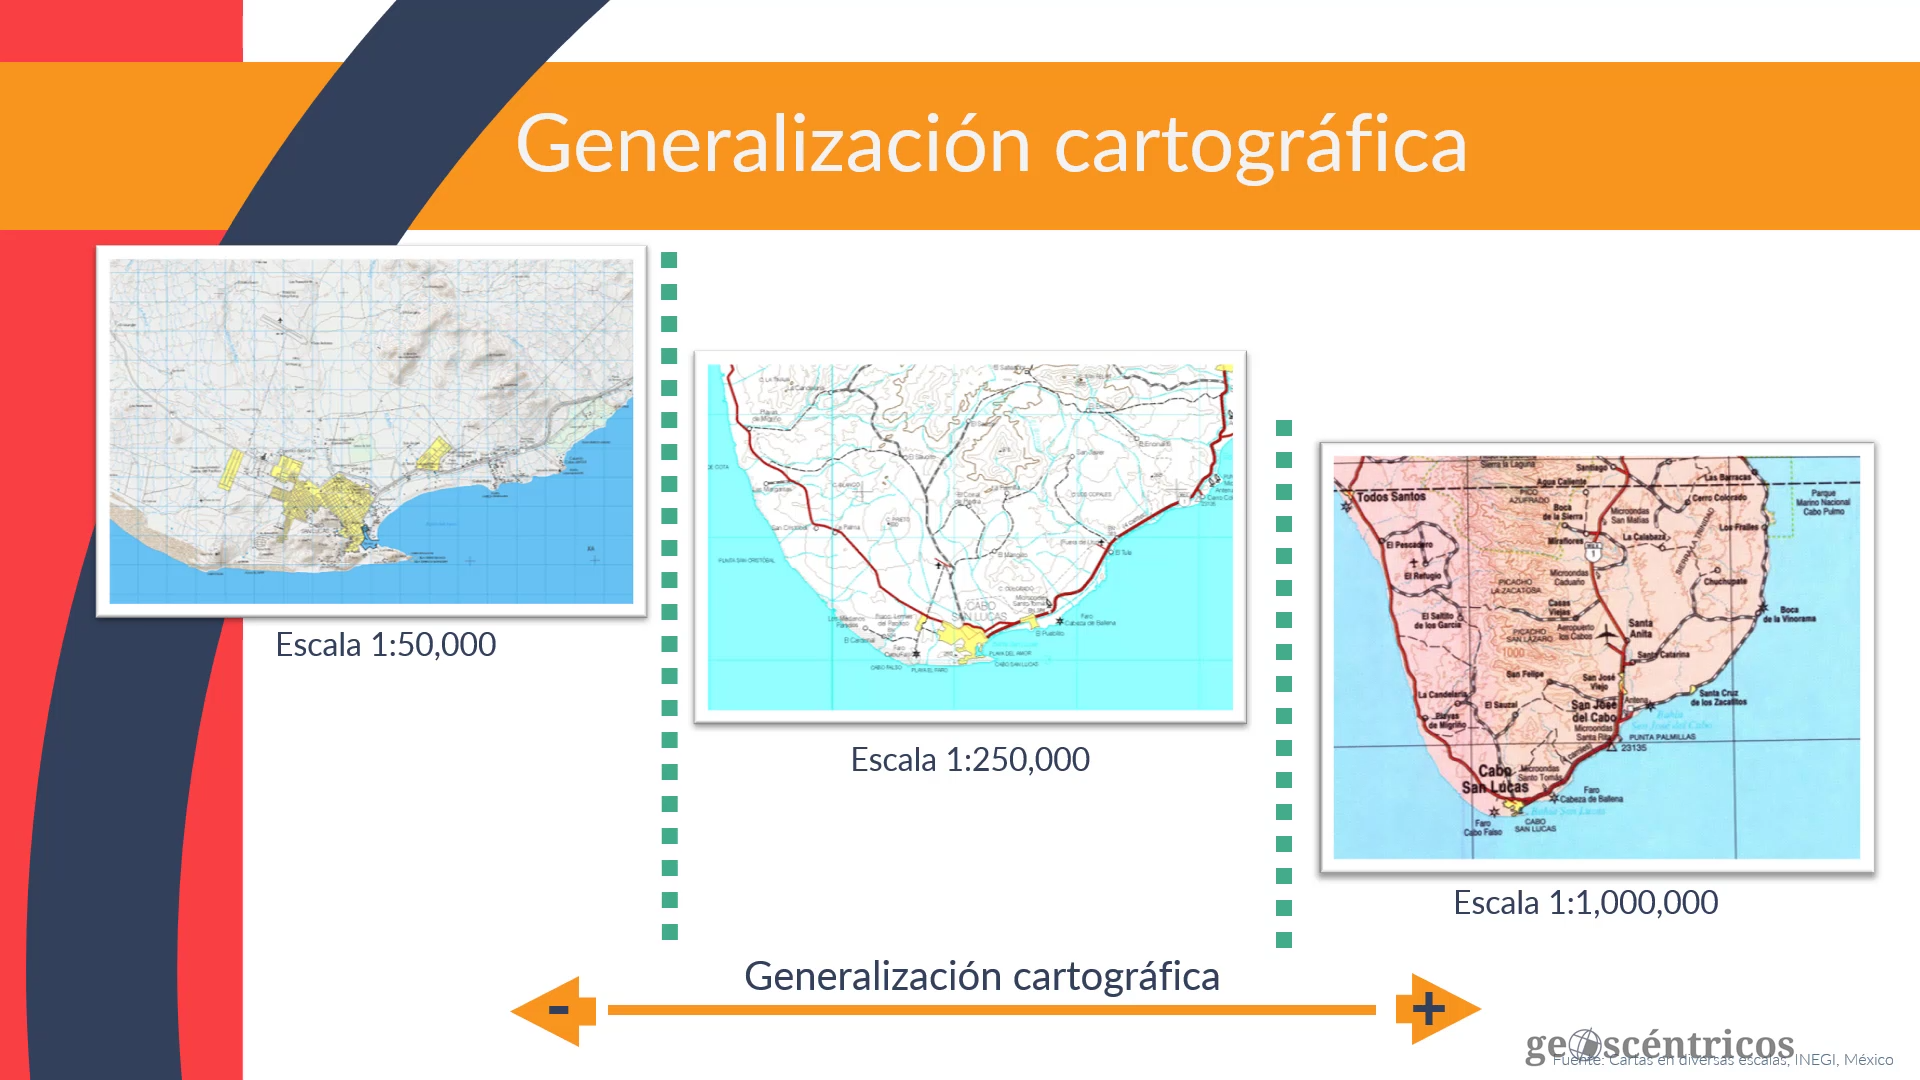 Generalización cartografica